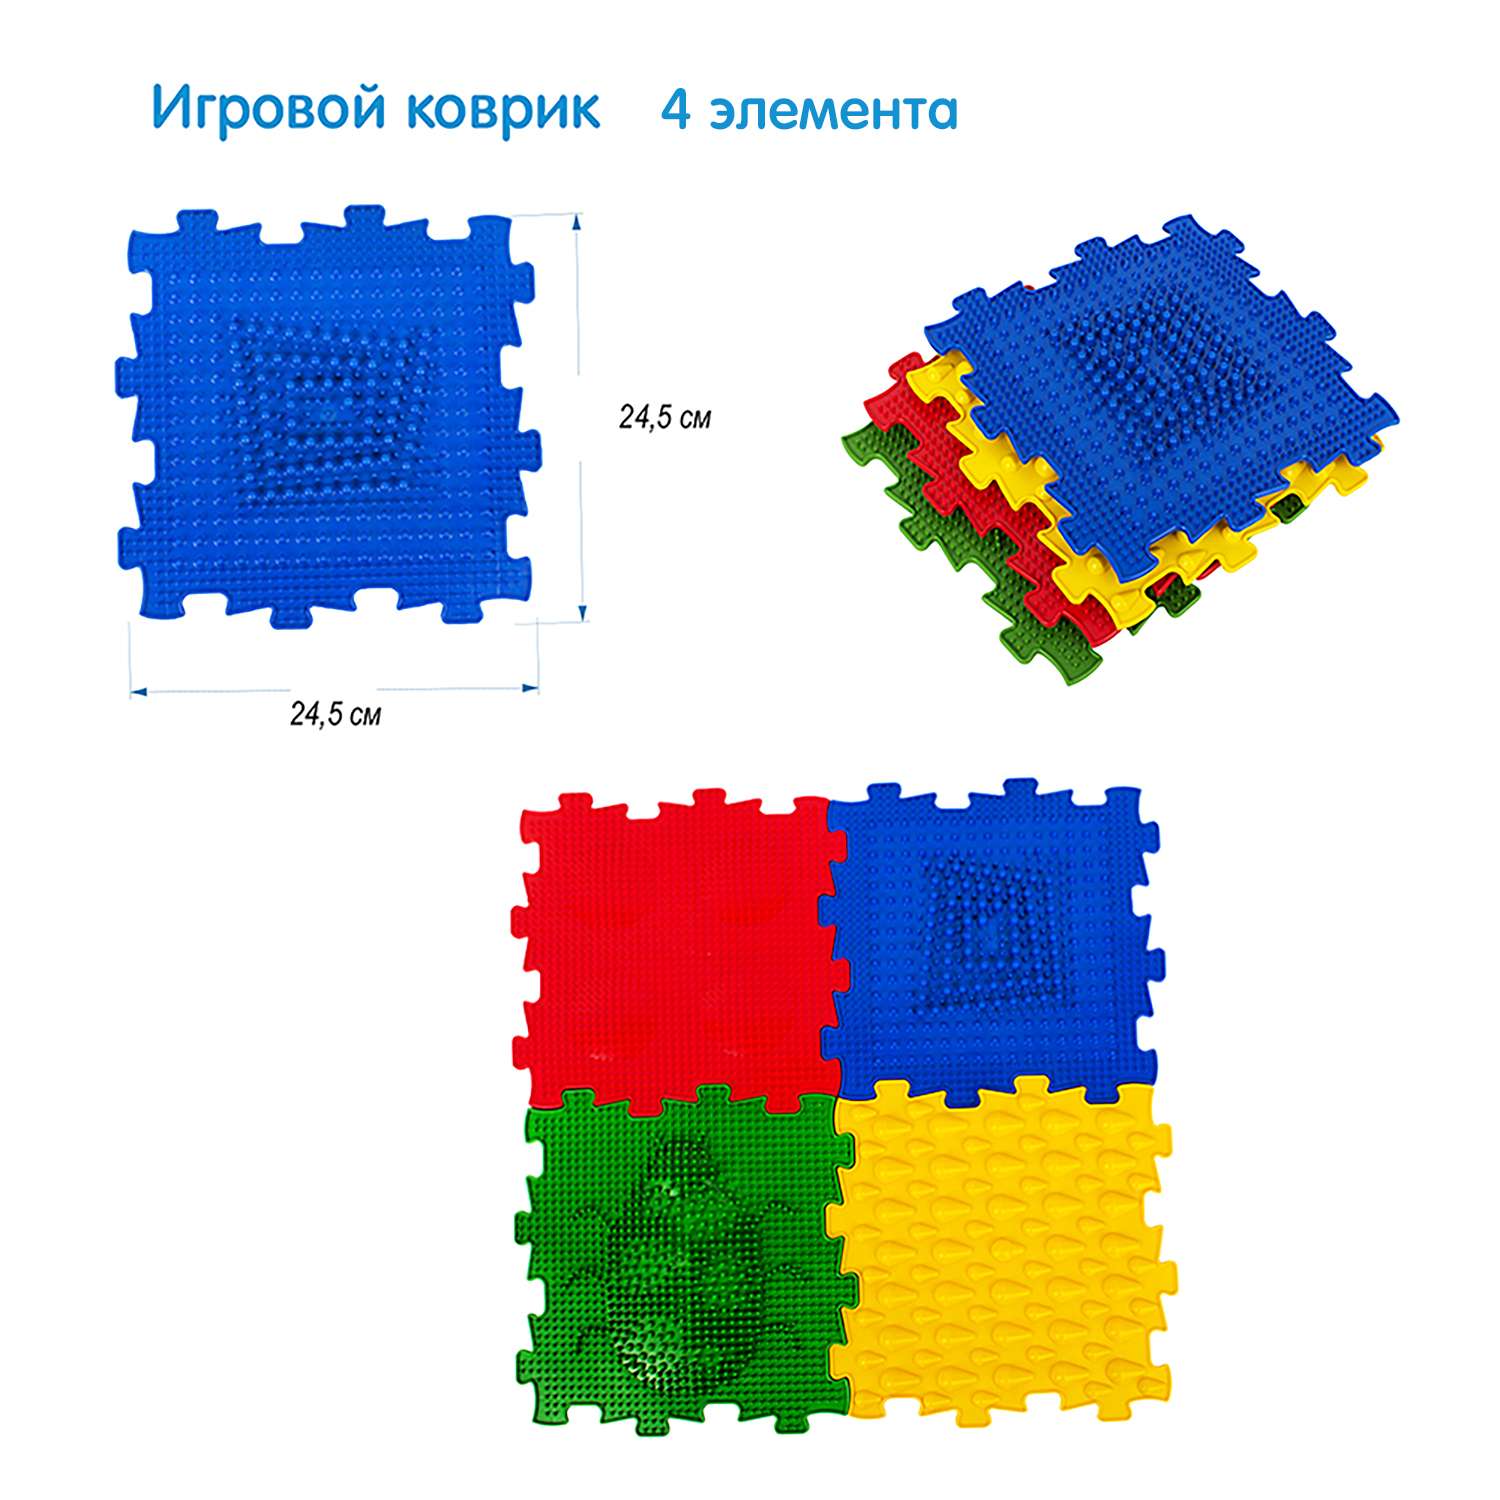 Игровой коврик СТРОМ модульный 4 элементов - фото 1